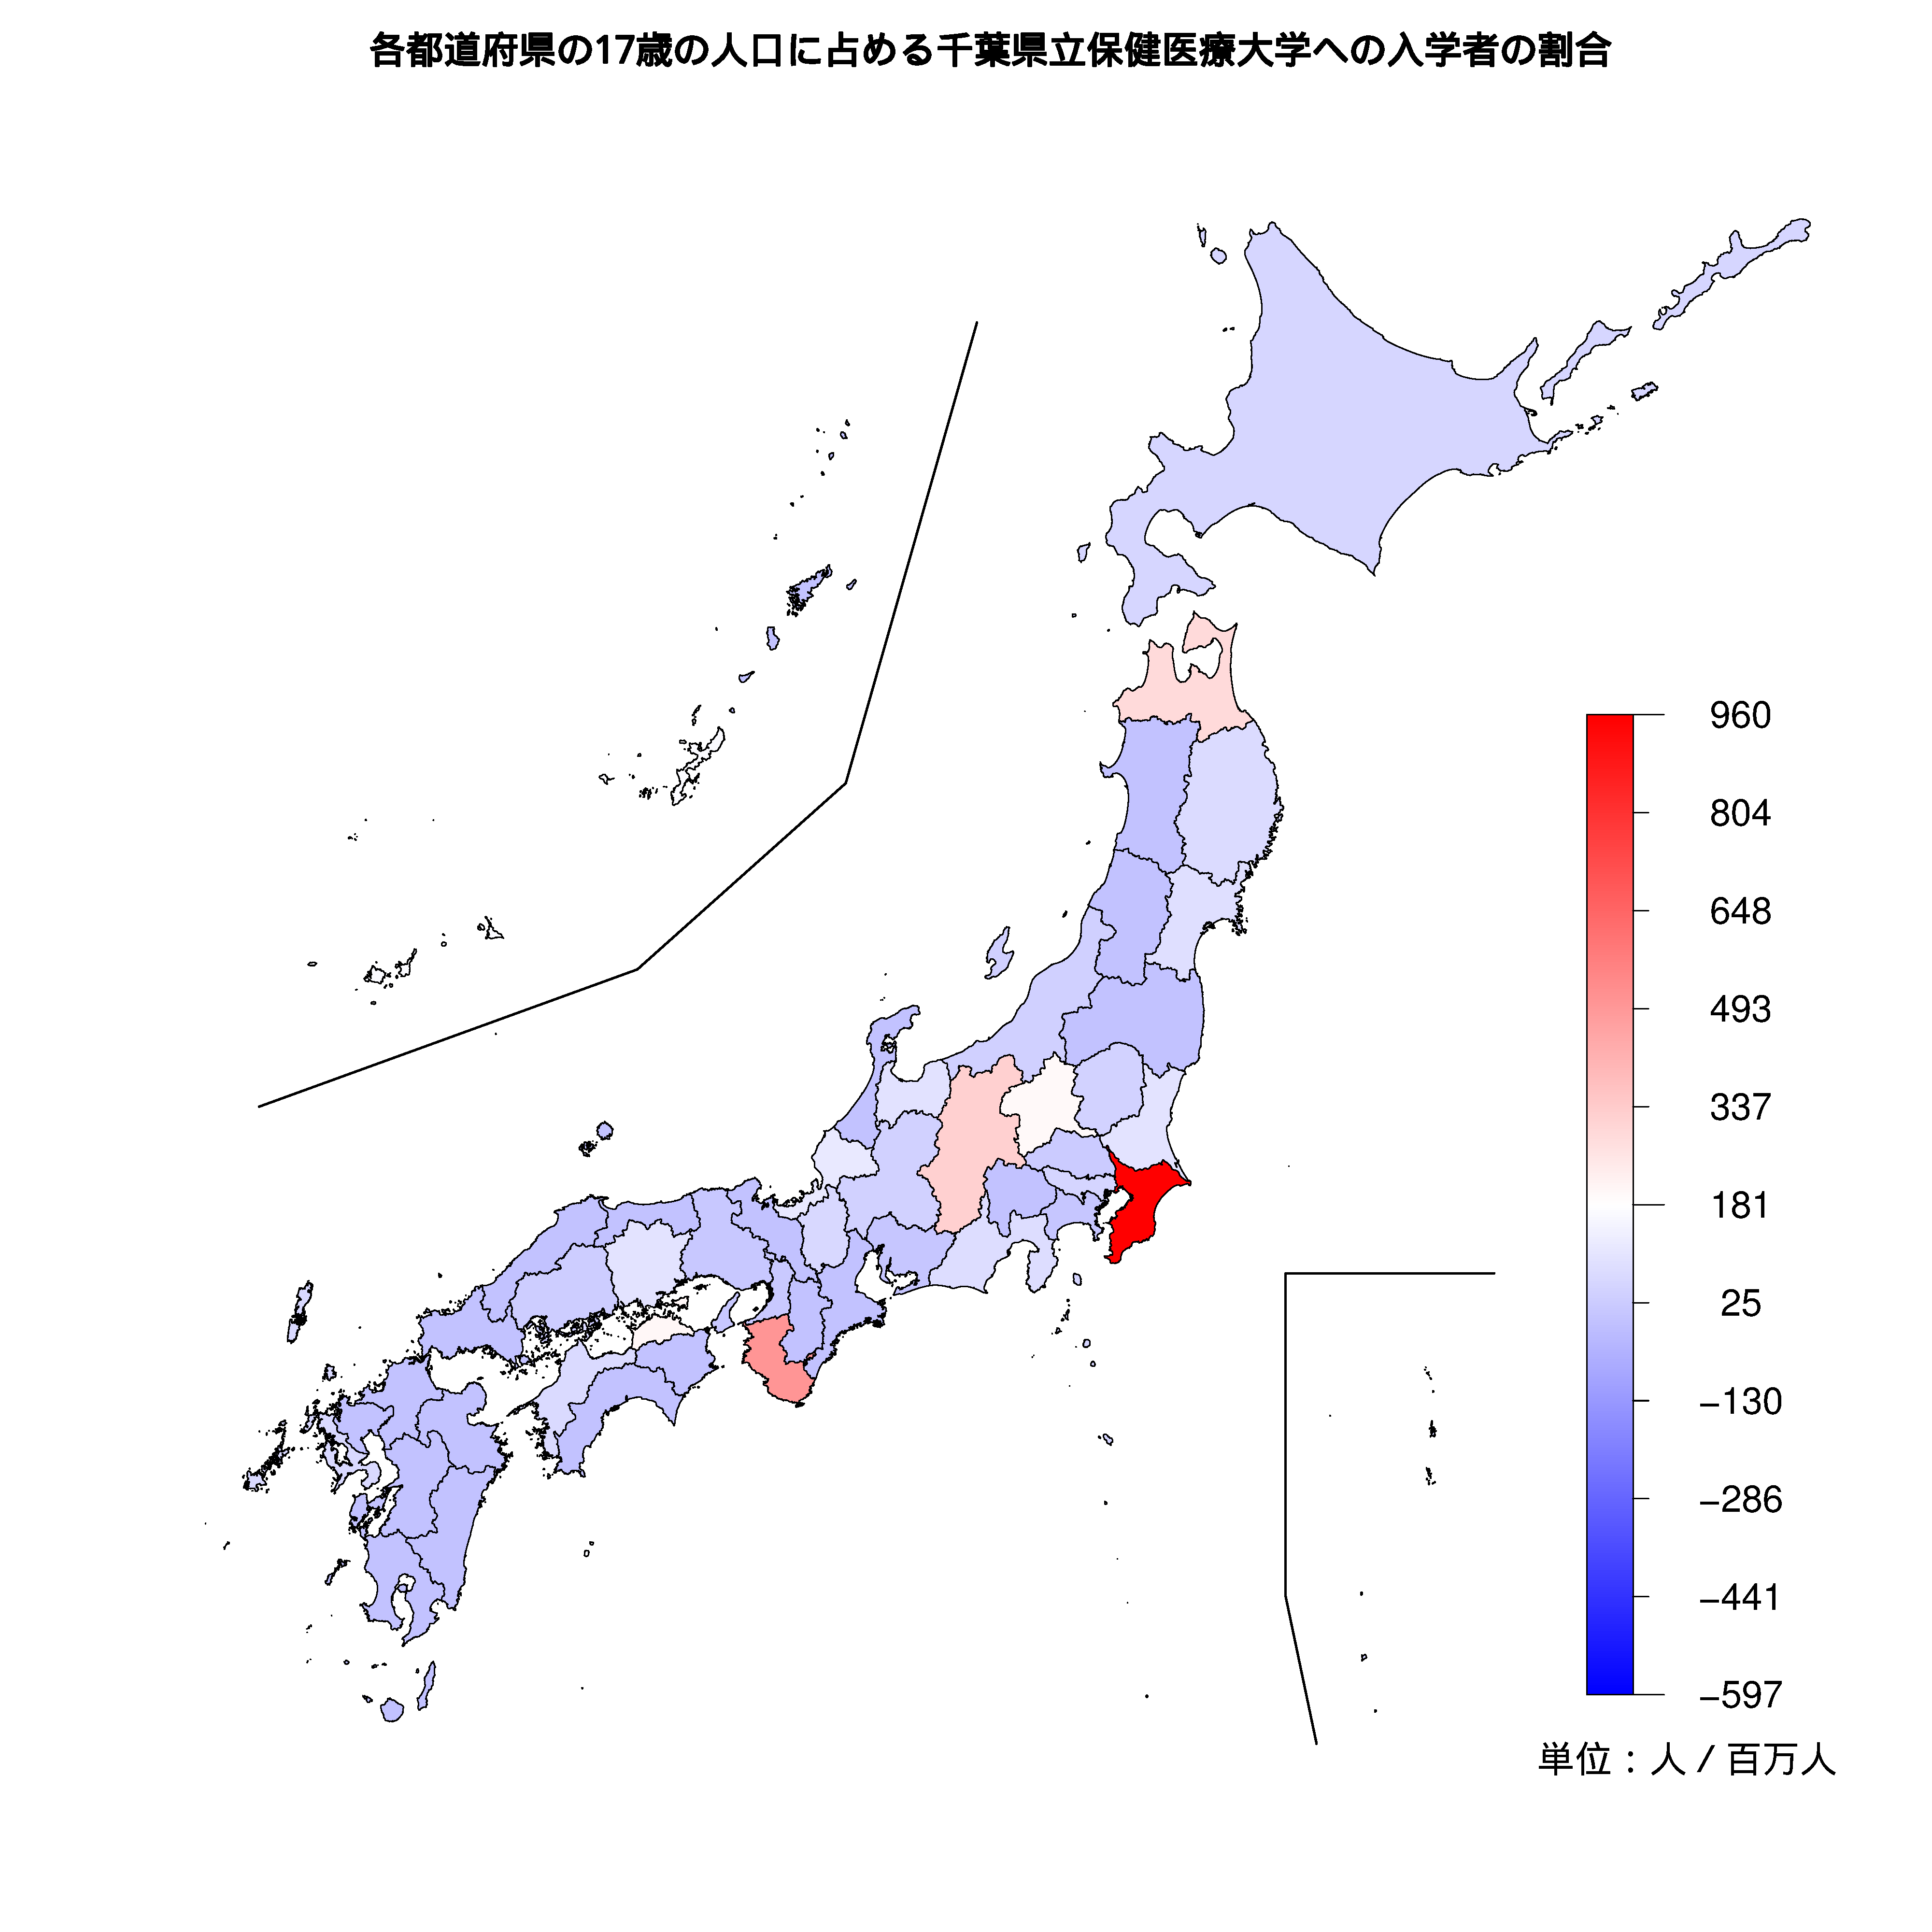 千葉県立保健医療大学への入学者が多い都道府県の色分け地図